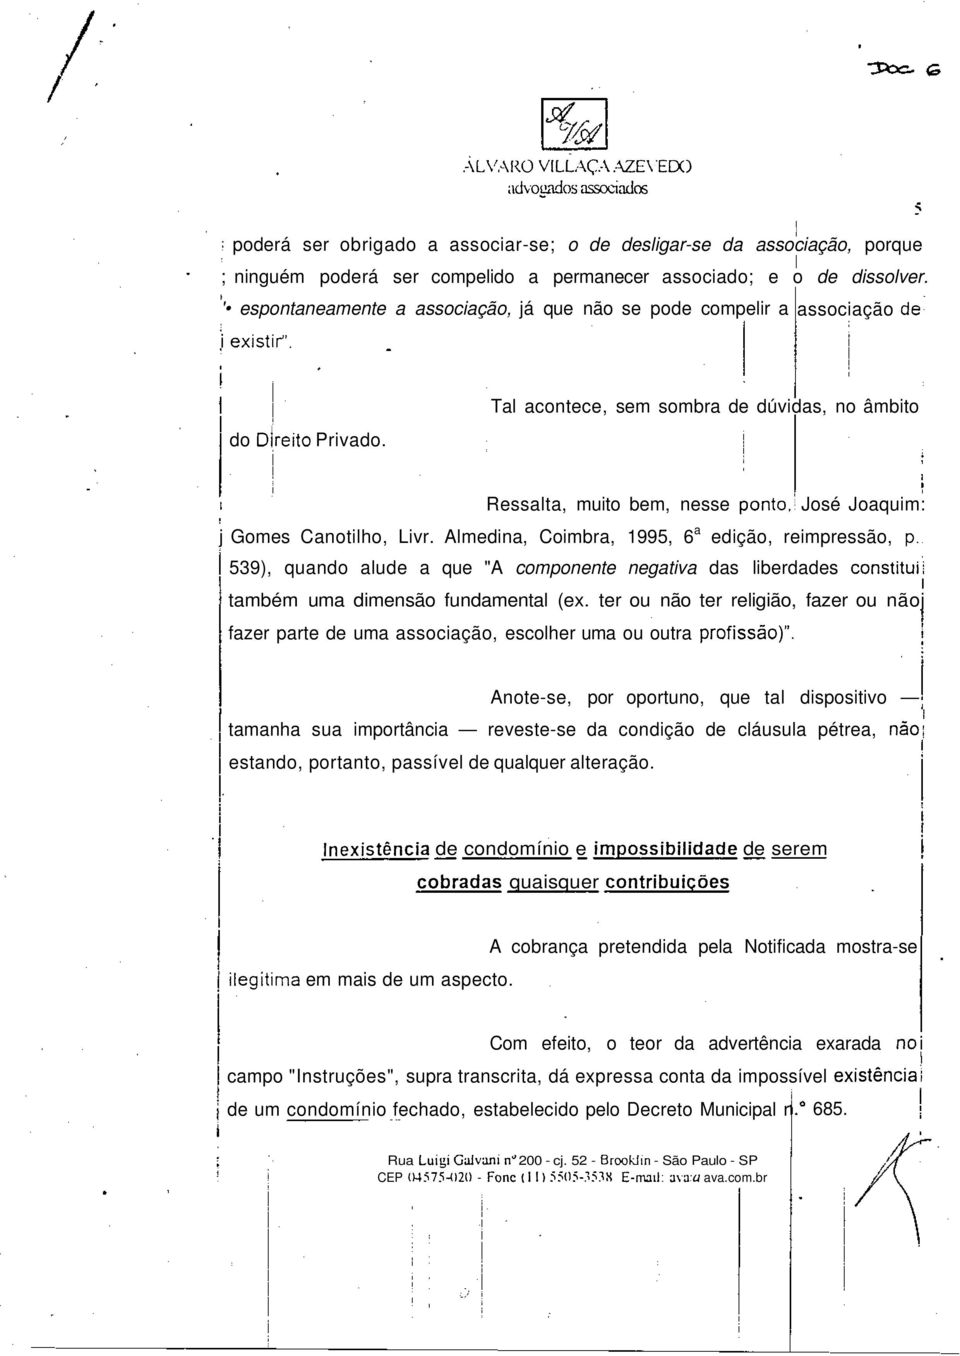 José Joaqum: j Gomes Canotlho, Lvr. Almedna, Combra, 1995, 6 a edção, rempressão, p. 539), quando alude a que "A componente negatva das lberdades consttu! também uma dmensão fundamental (ex.